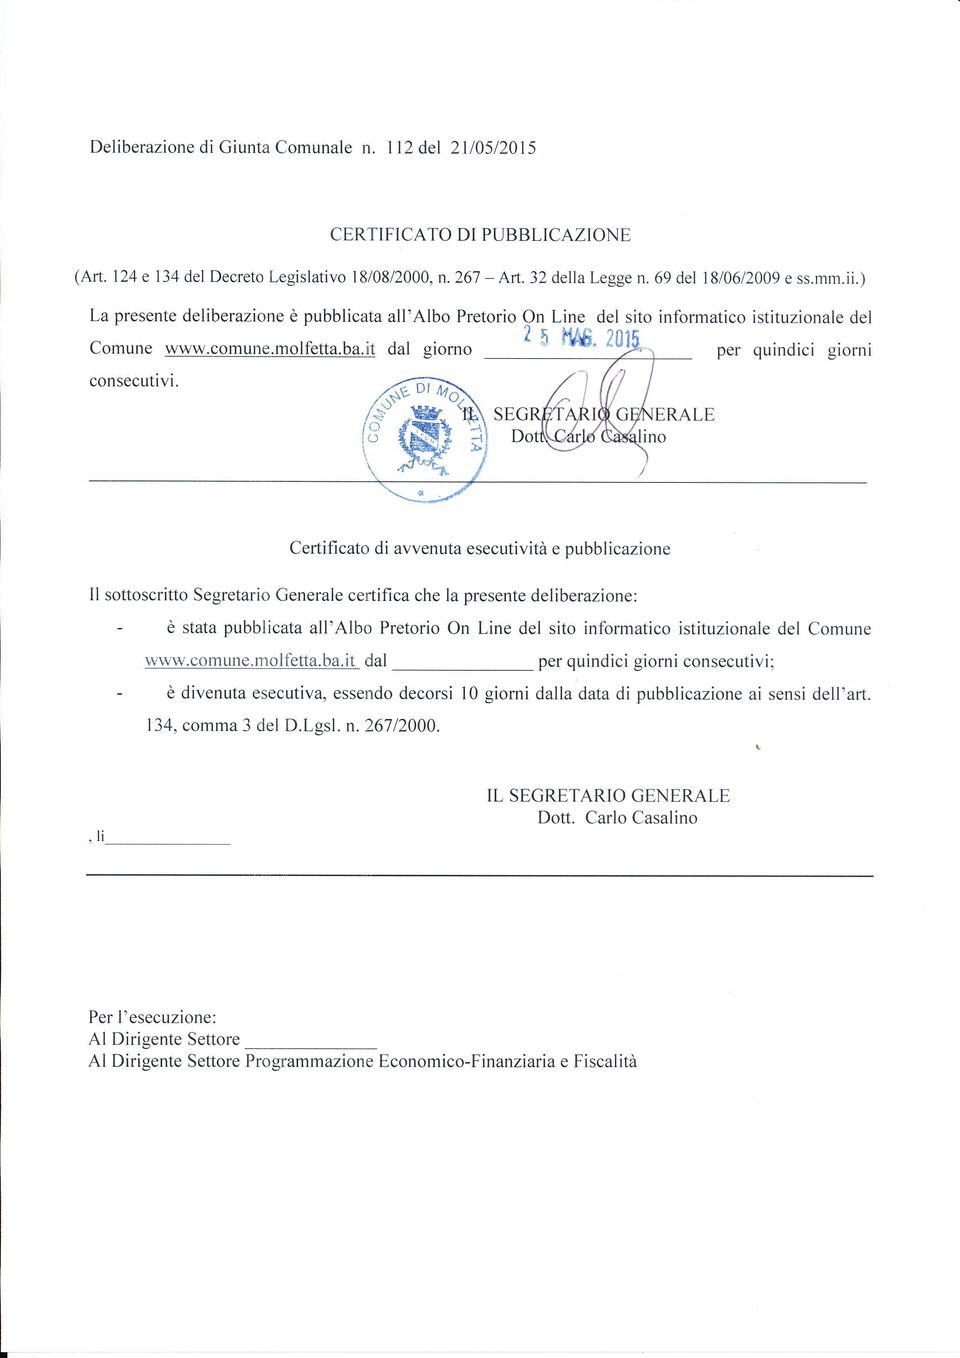 ERAL Certificato di avvenuta esecutività e pubblicazione Il sottoscritto Segretario Generale certifica che la presente deliberazione: - è stata pubblicata all'albo Pretorio On Line del sito